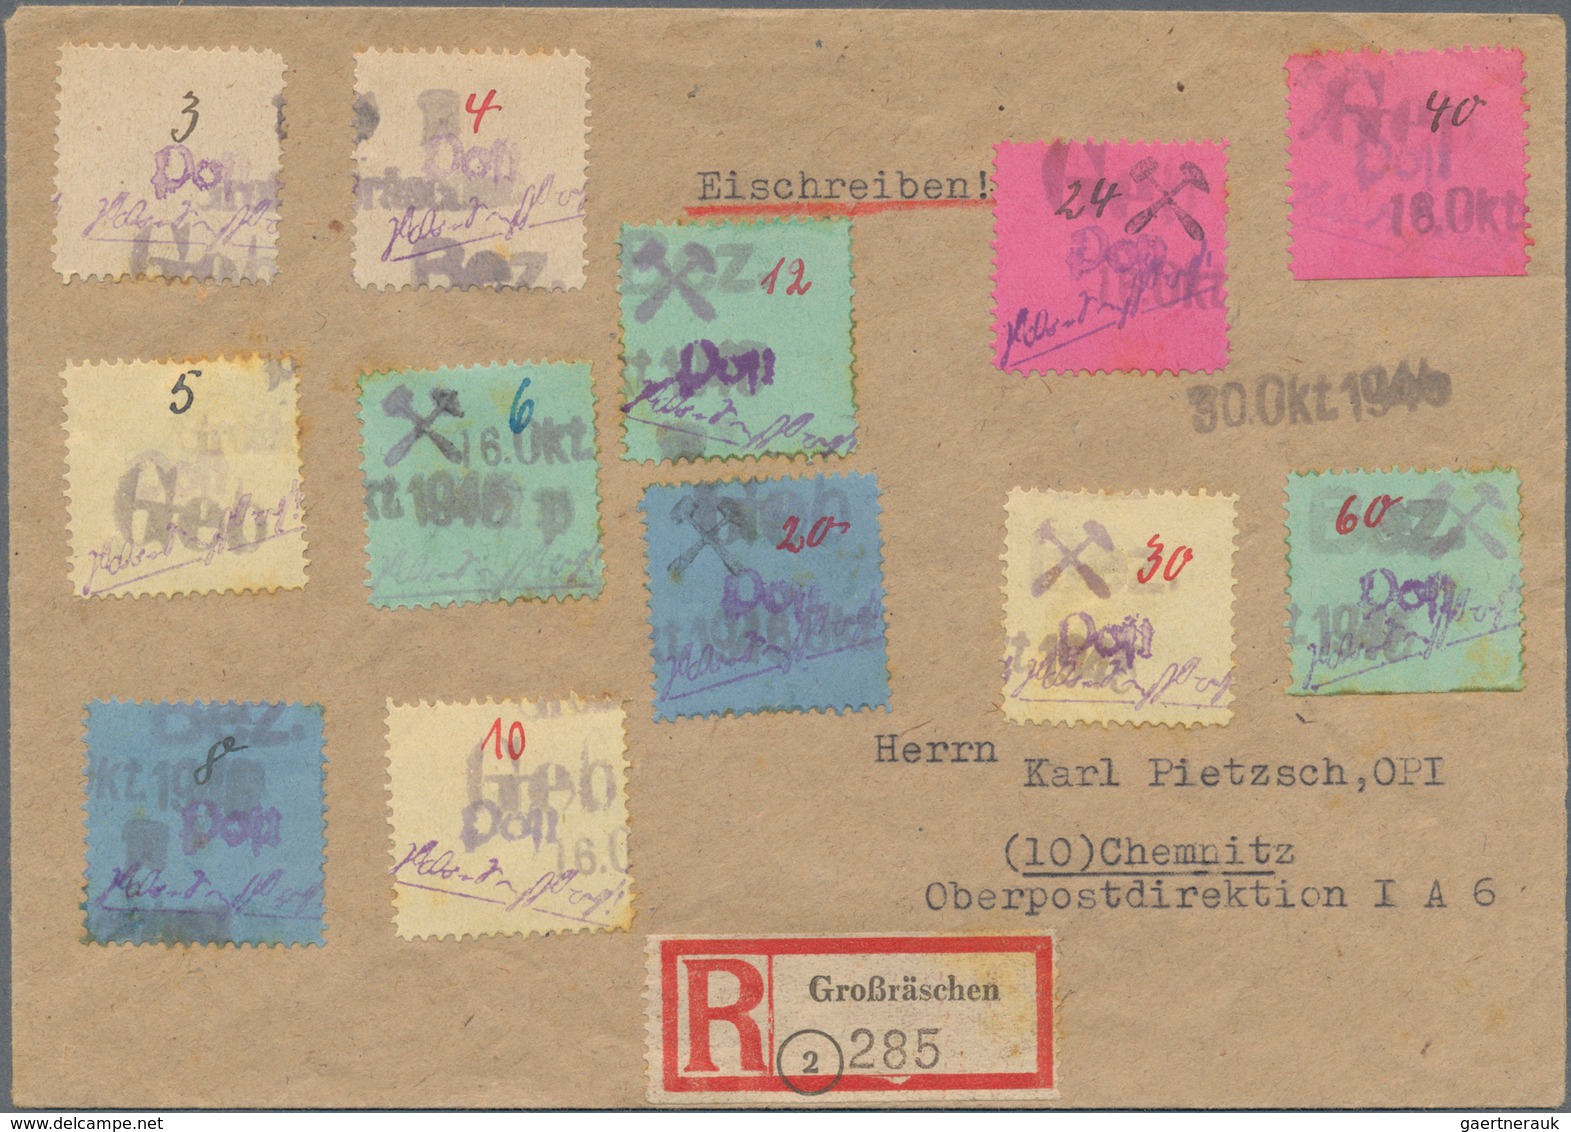 Deutsche Lokalausgaben ab 1945: 1945, kleines Lot mit 40 Briefen und Belegen, dabei einige philateli